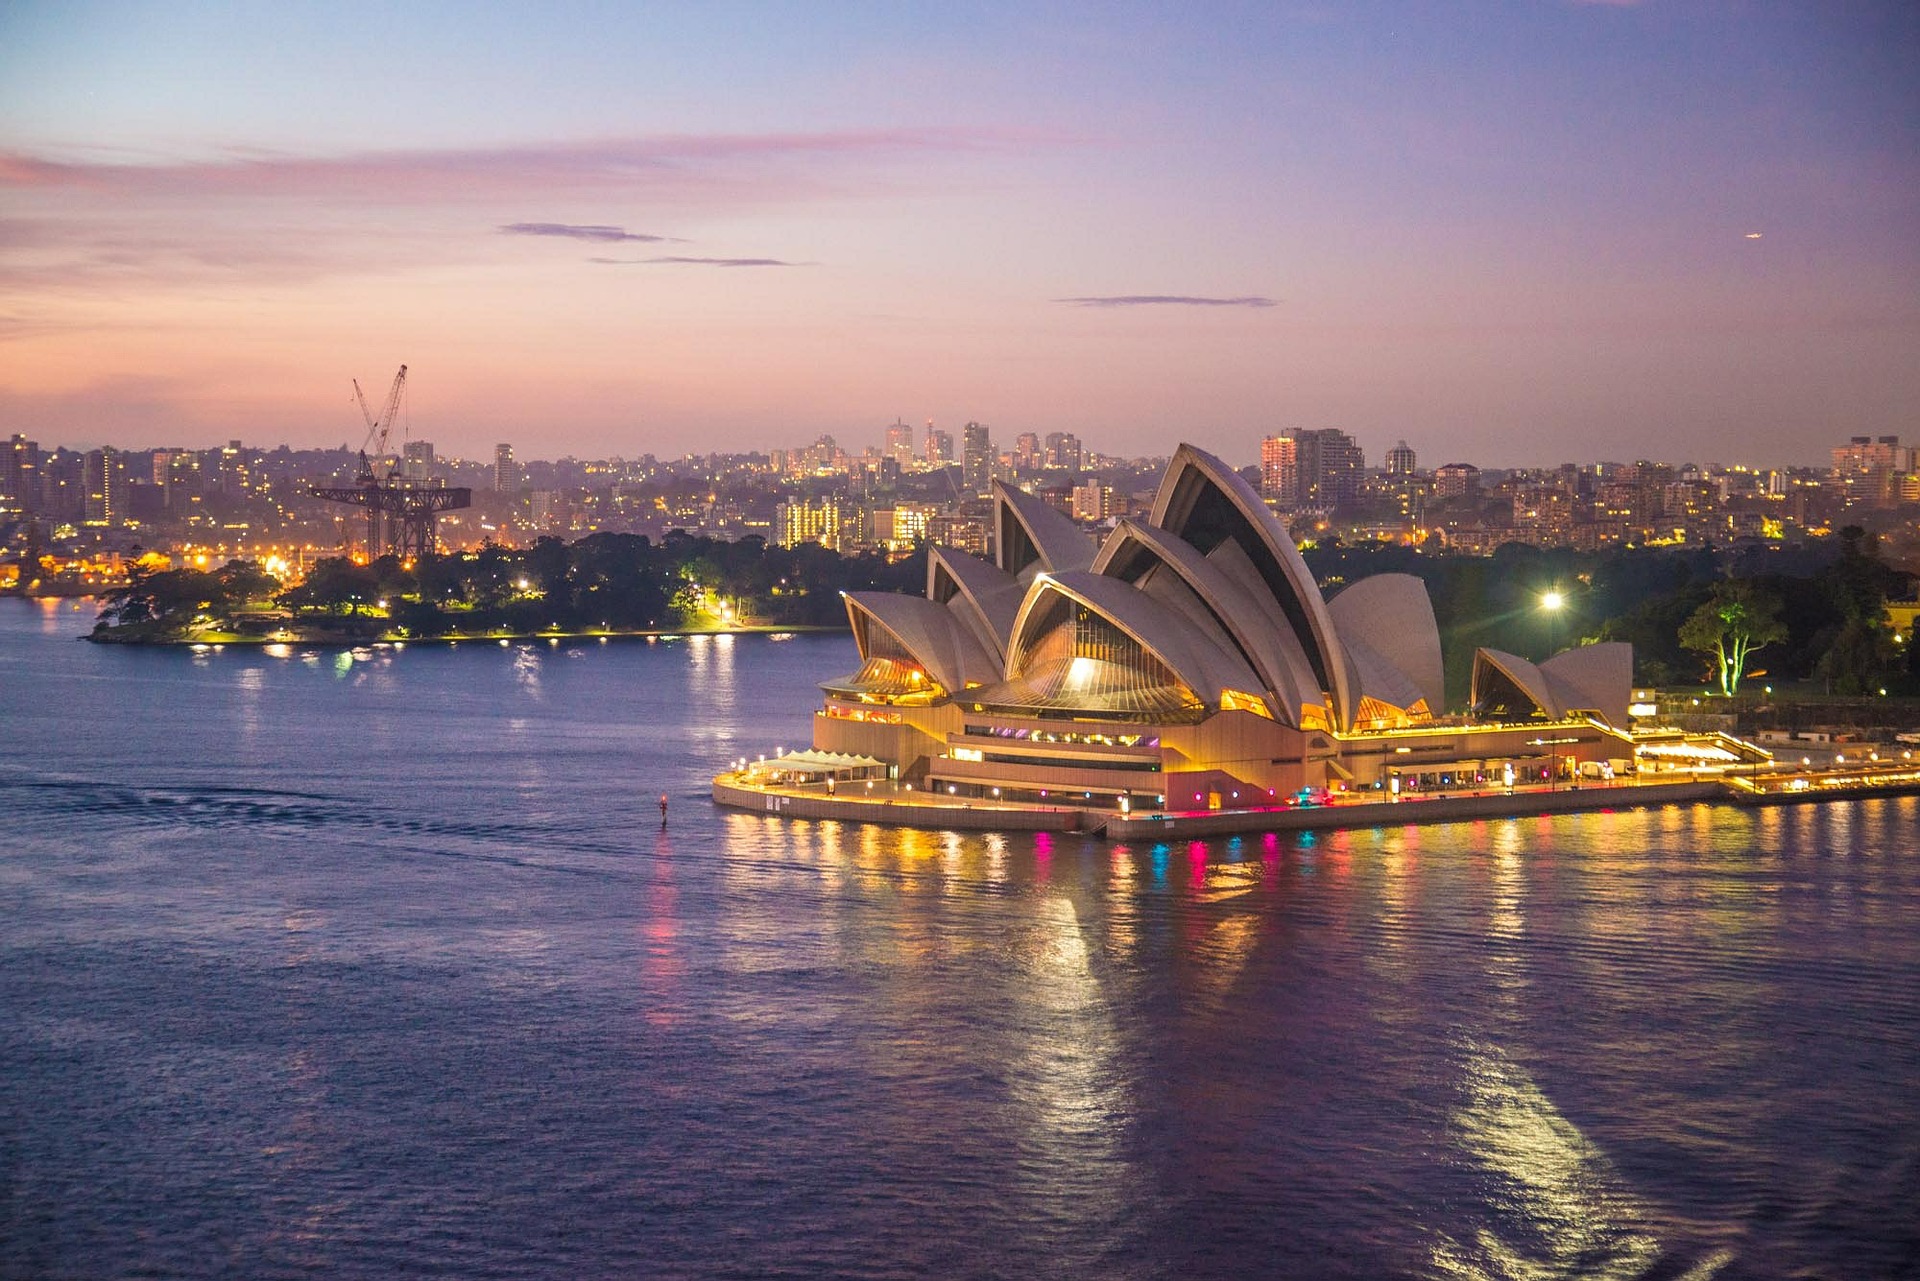 ออสเตรเลียเตรียมเปิดประเทศรับนักท่องเที่ยวต่างชาติเริ่มต้น 21 ก.พ. นี้!